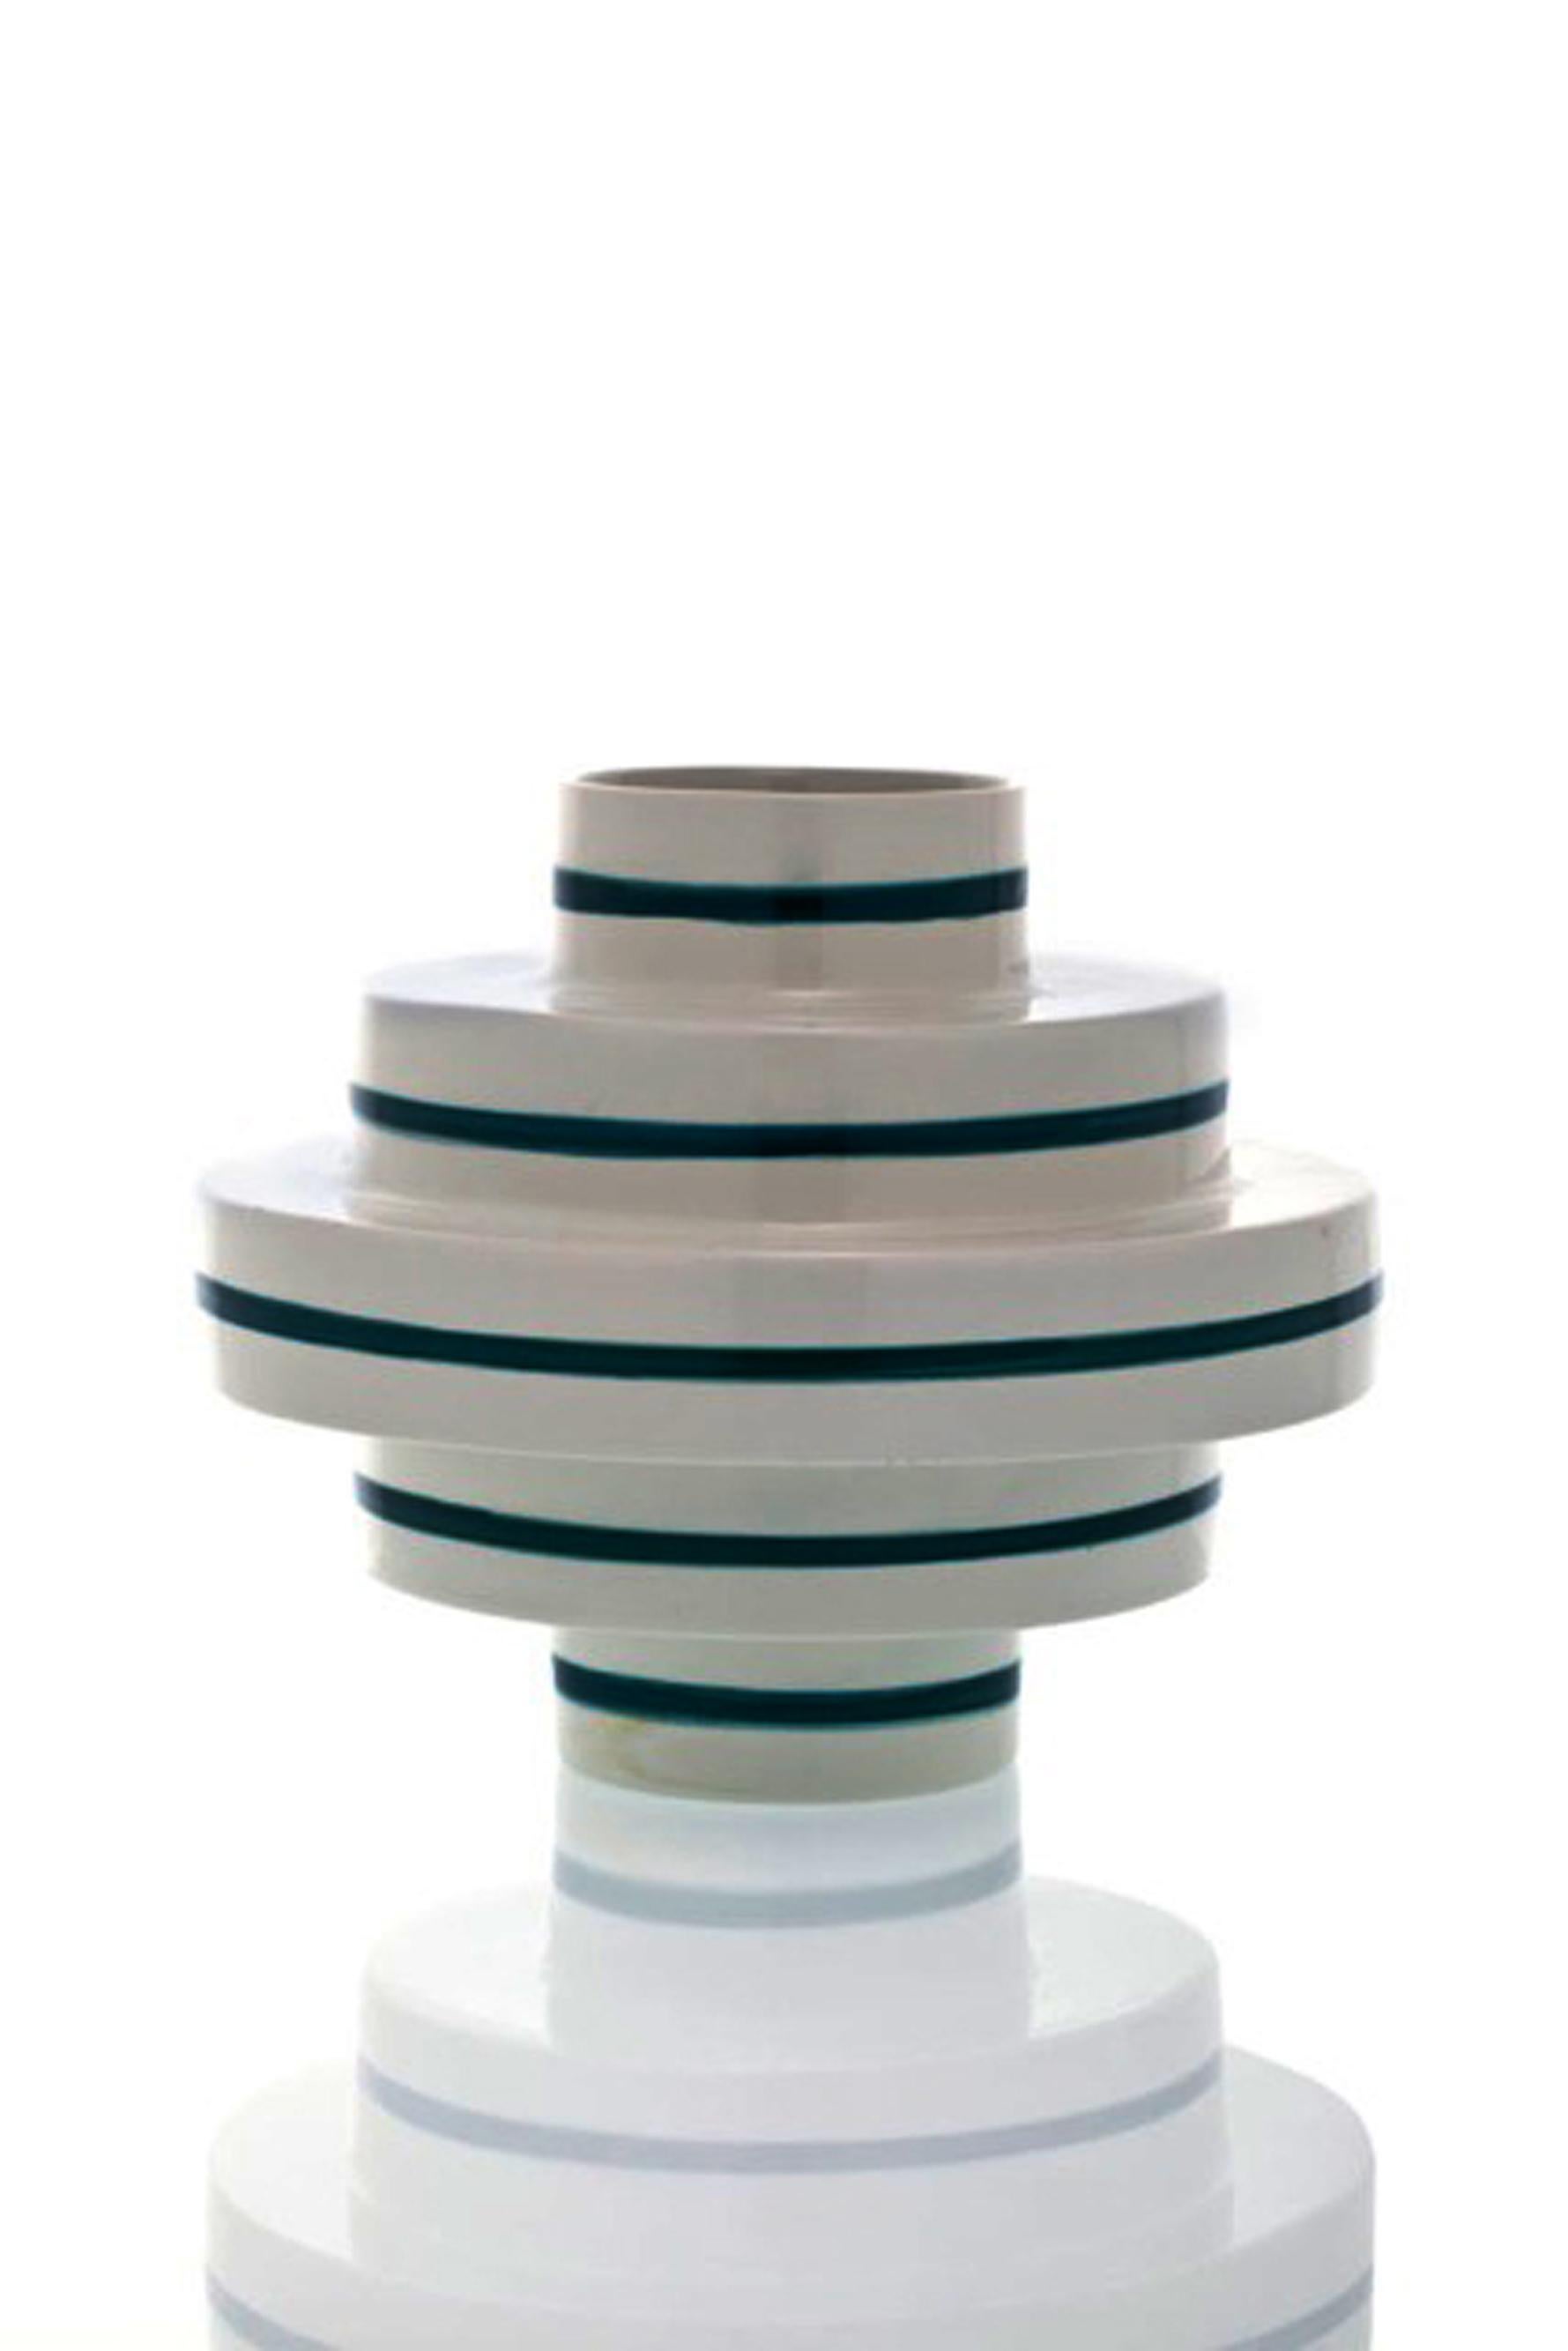 Italian Contemporary Ceramic Vessel  For Sale